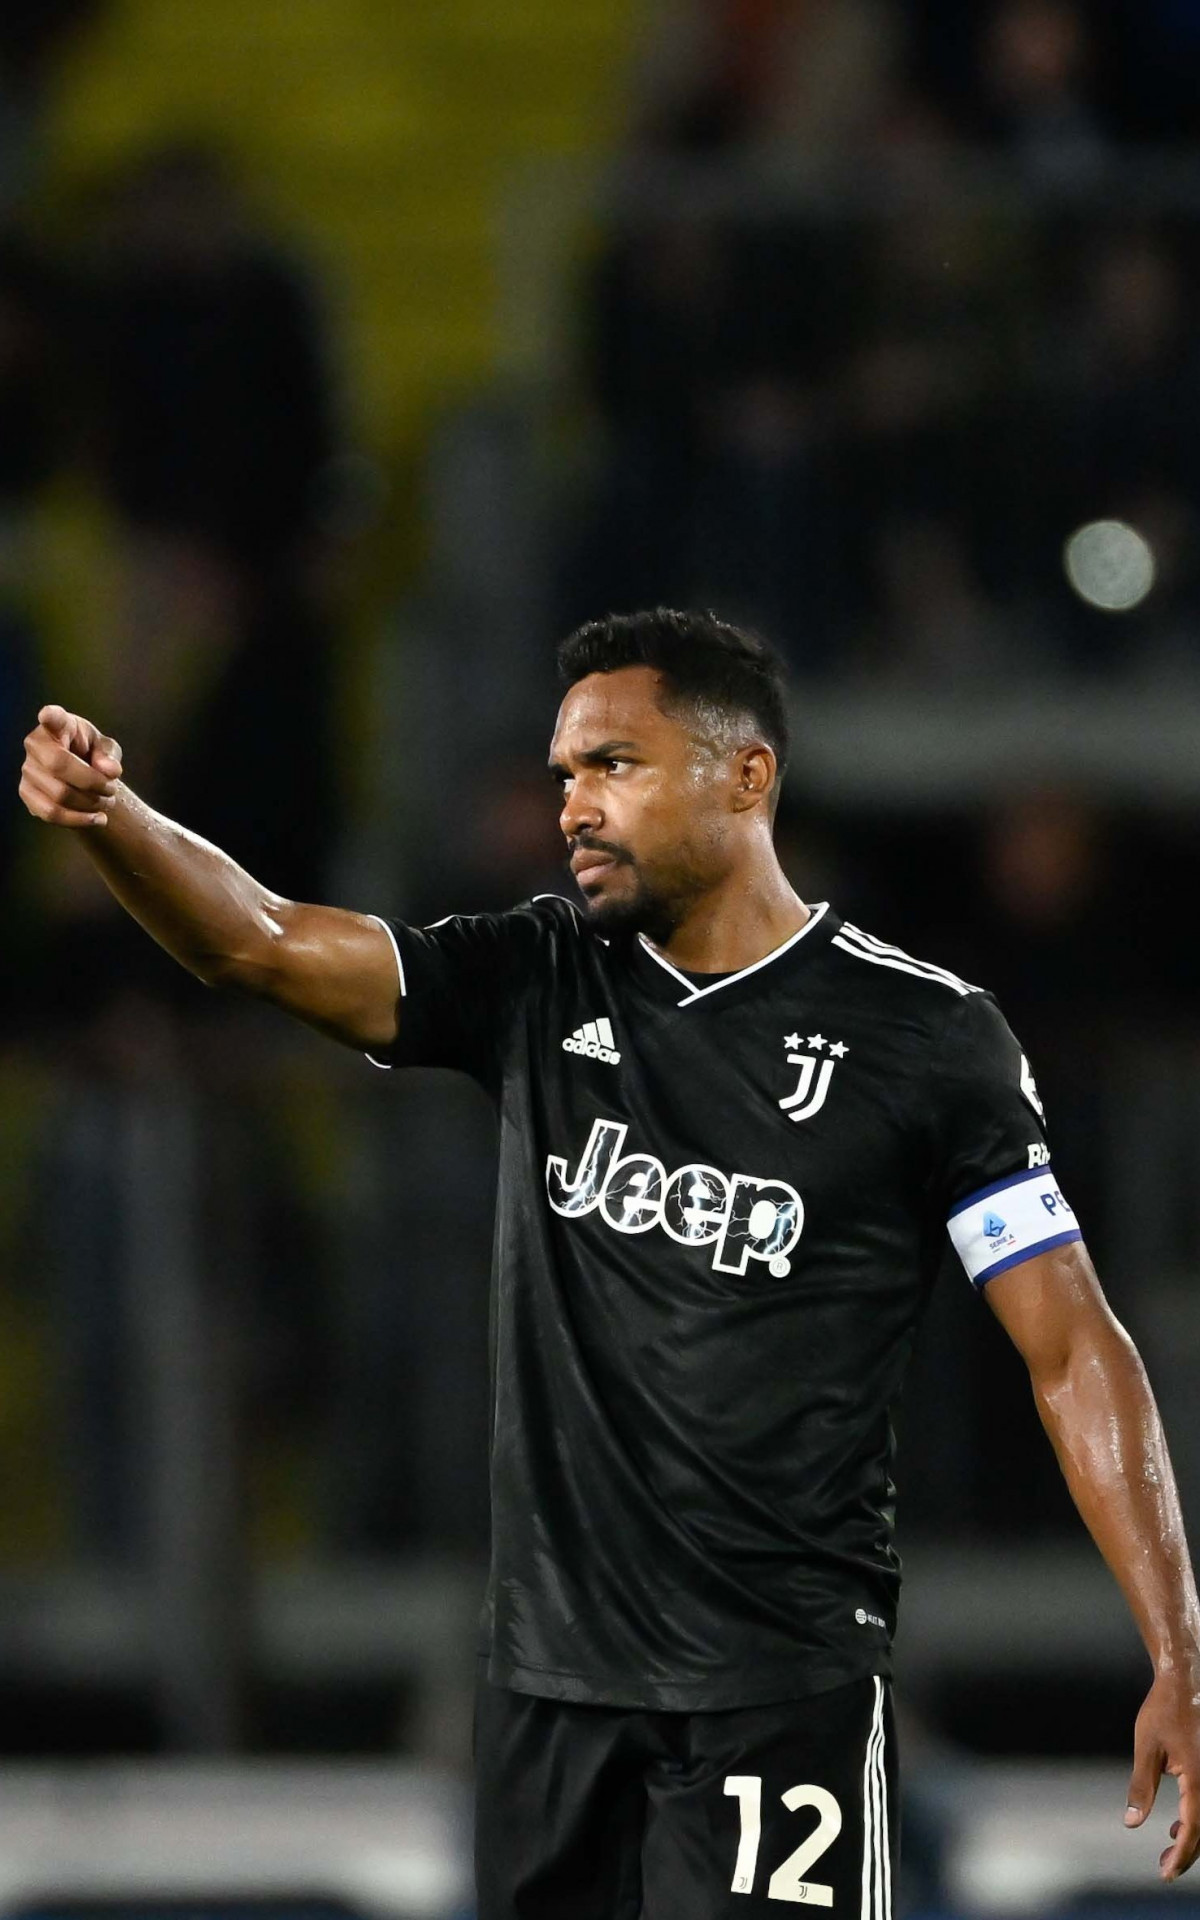 Juventus é punida com perda de 10 pontos no Campeonato Italiano